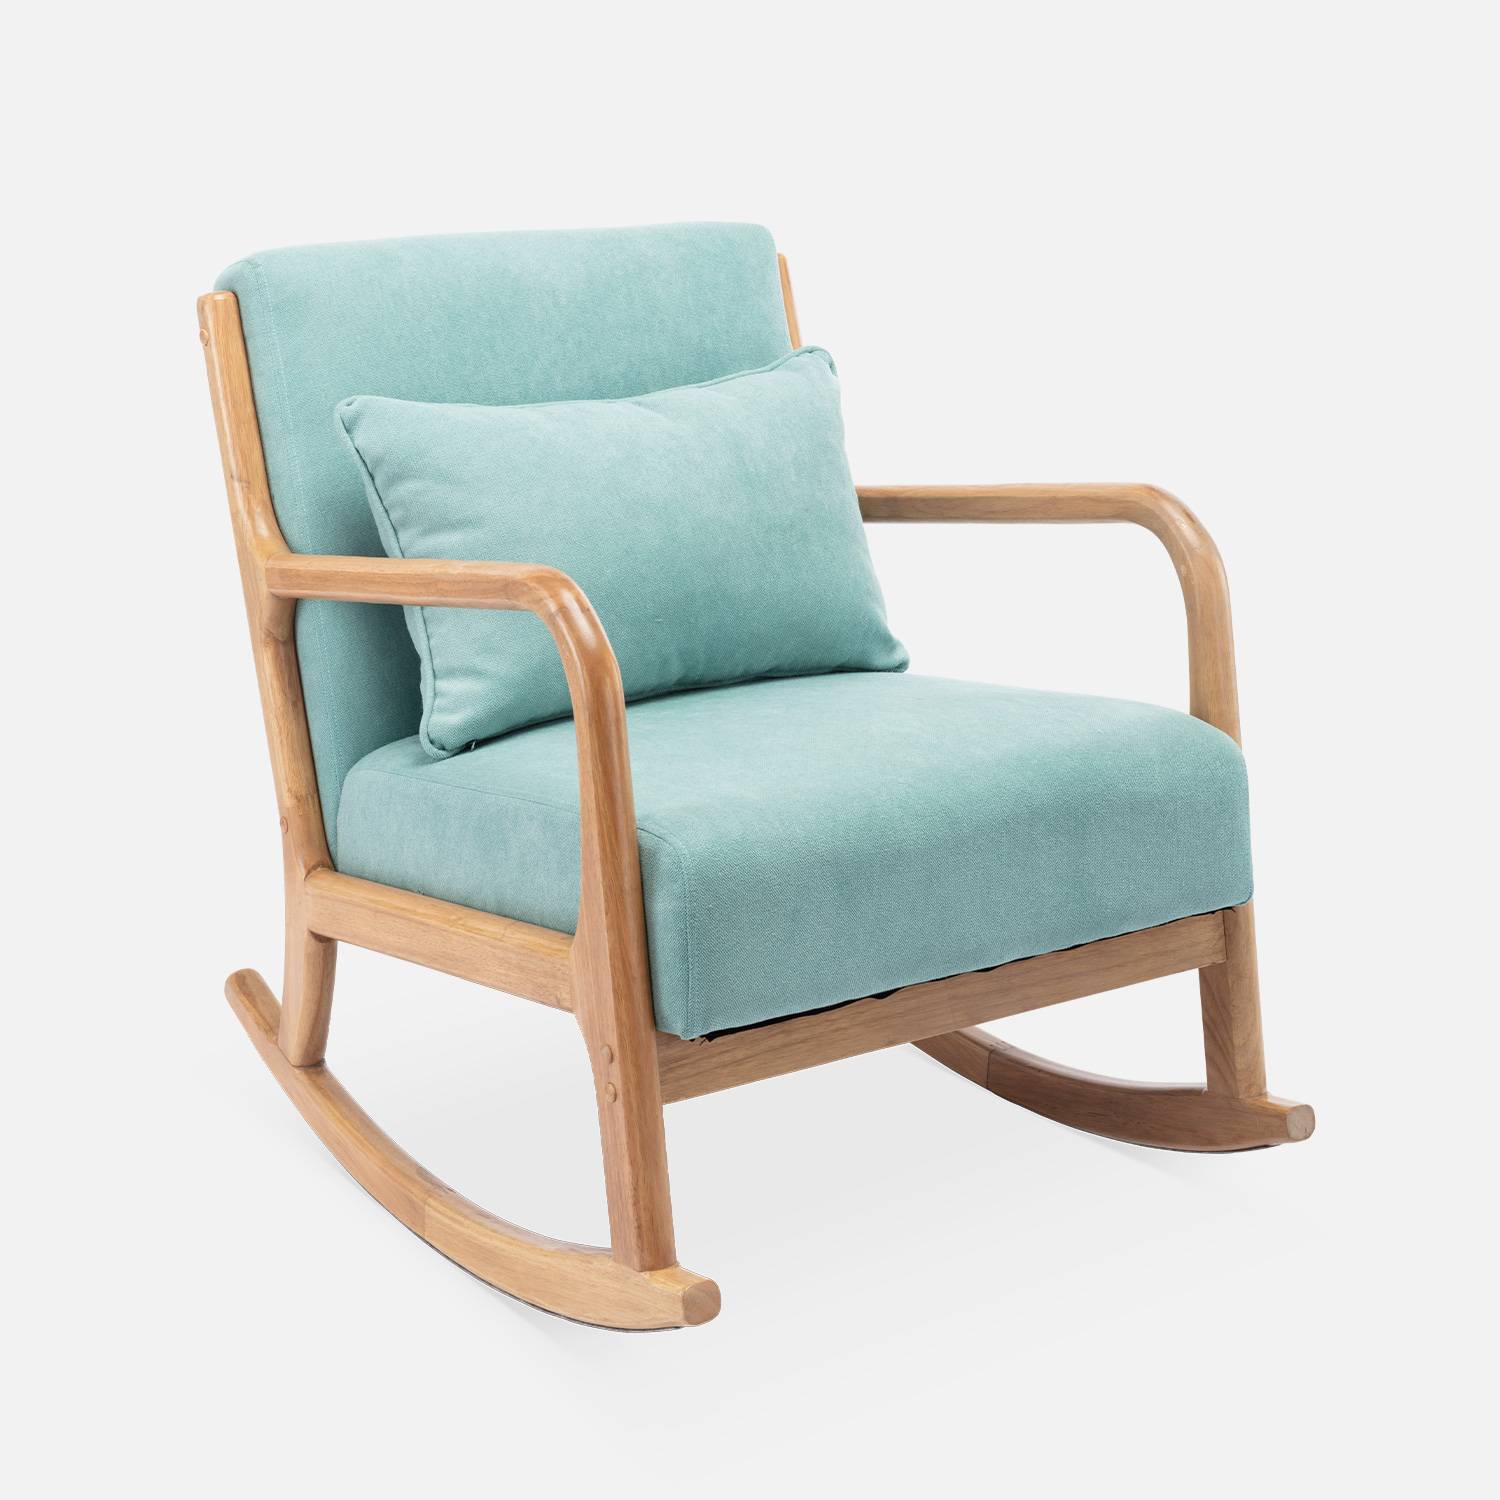 Fauteuil à bascule design en bois et tissu, 1 place, rocking chair scandinave, vert d'eau Photo3